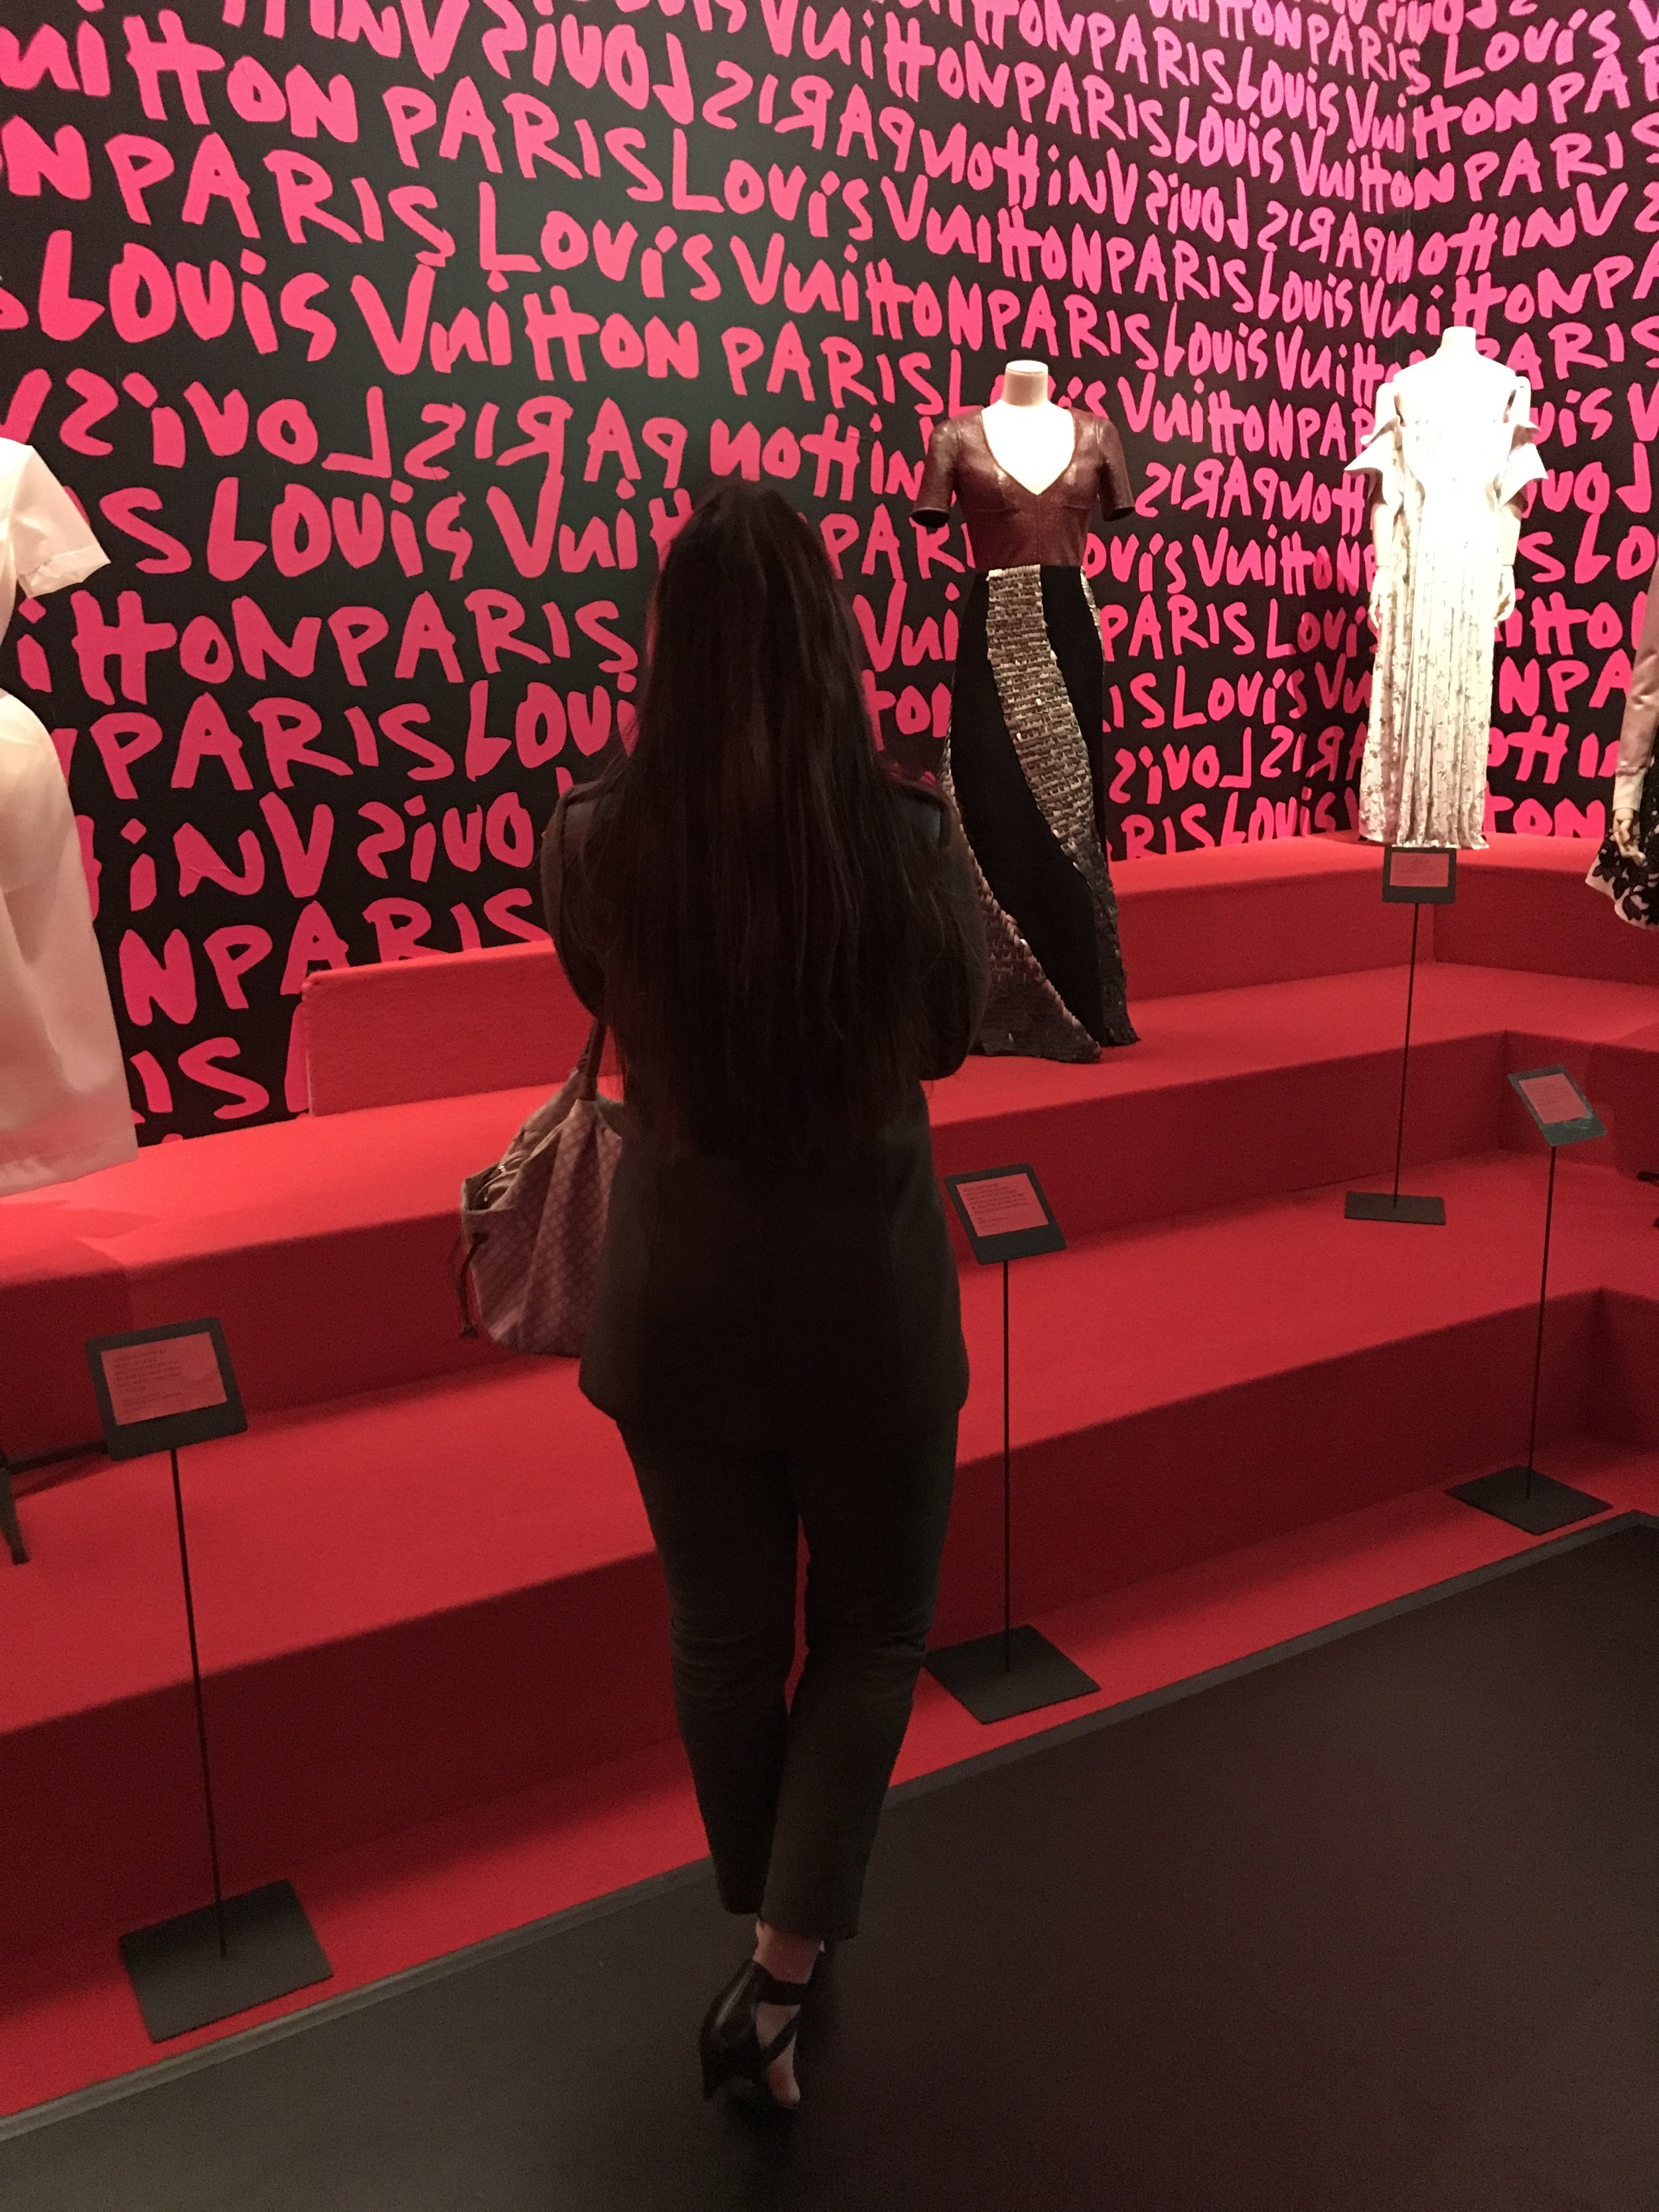 Fabulous Louis Vuitton Exhibit - Volez Voguez Voyagez - IT'S SO CLUTCH